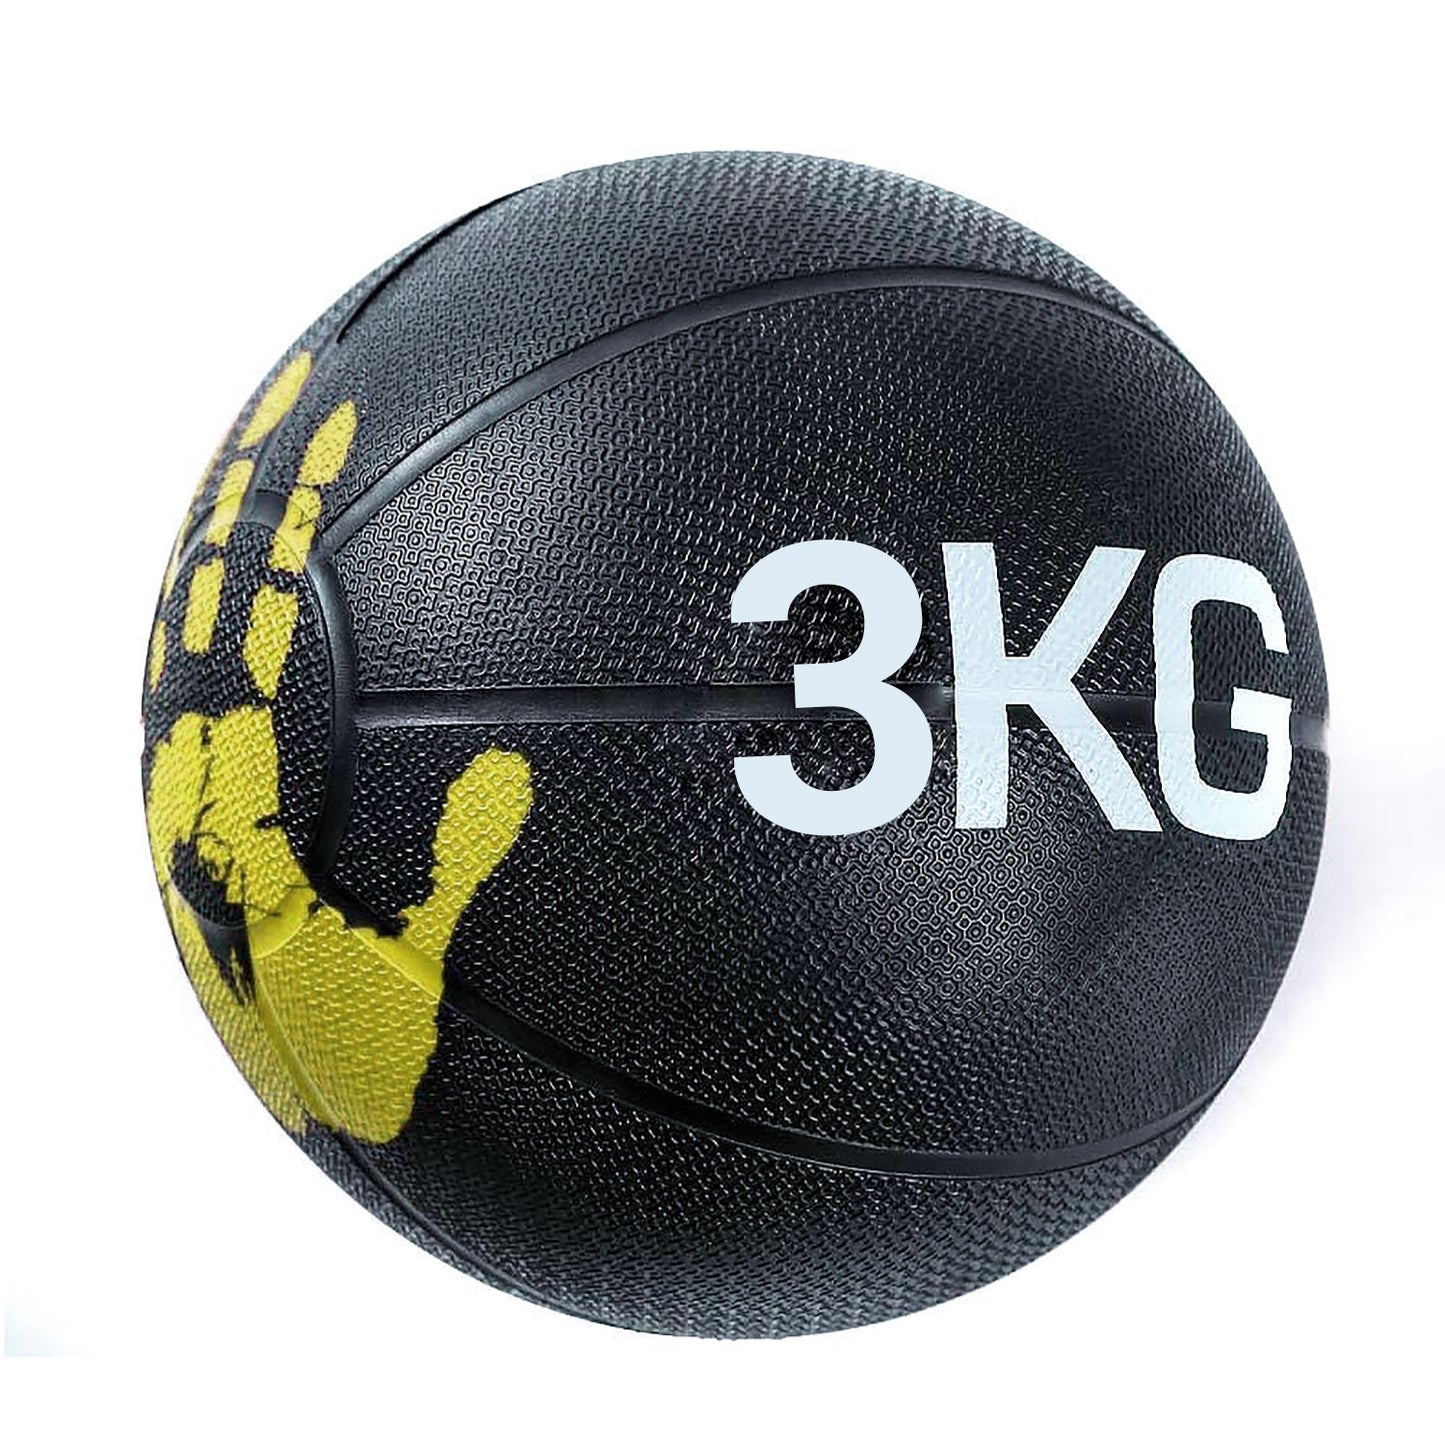 كرة طبية من المطاط لاعادة التأهيل و اللياقة البدنية - بشكل كف يد - لون اسود و اصفر - وزن 3 كيلو جرام